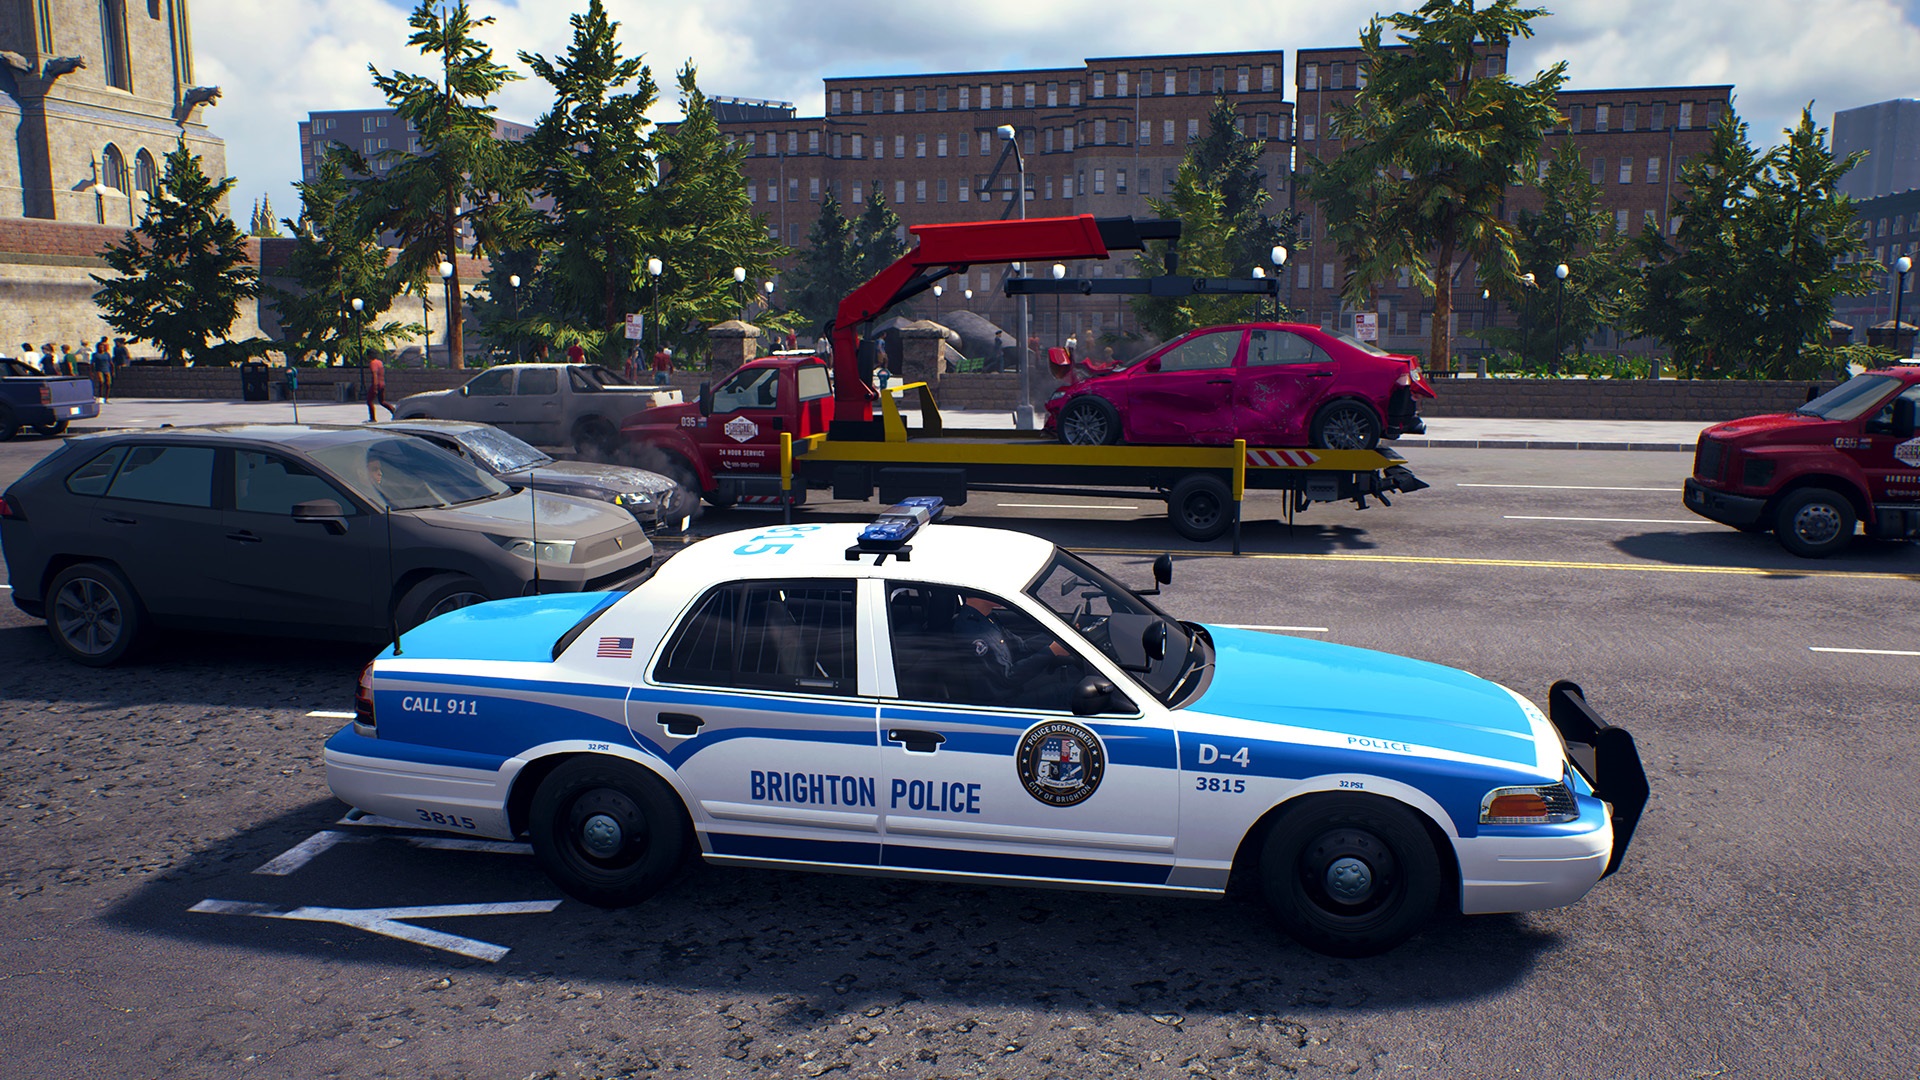 Police Simulator Patrol Officers içerisinden bir olay yeri görüntüsü